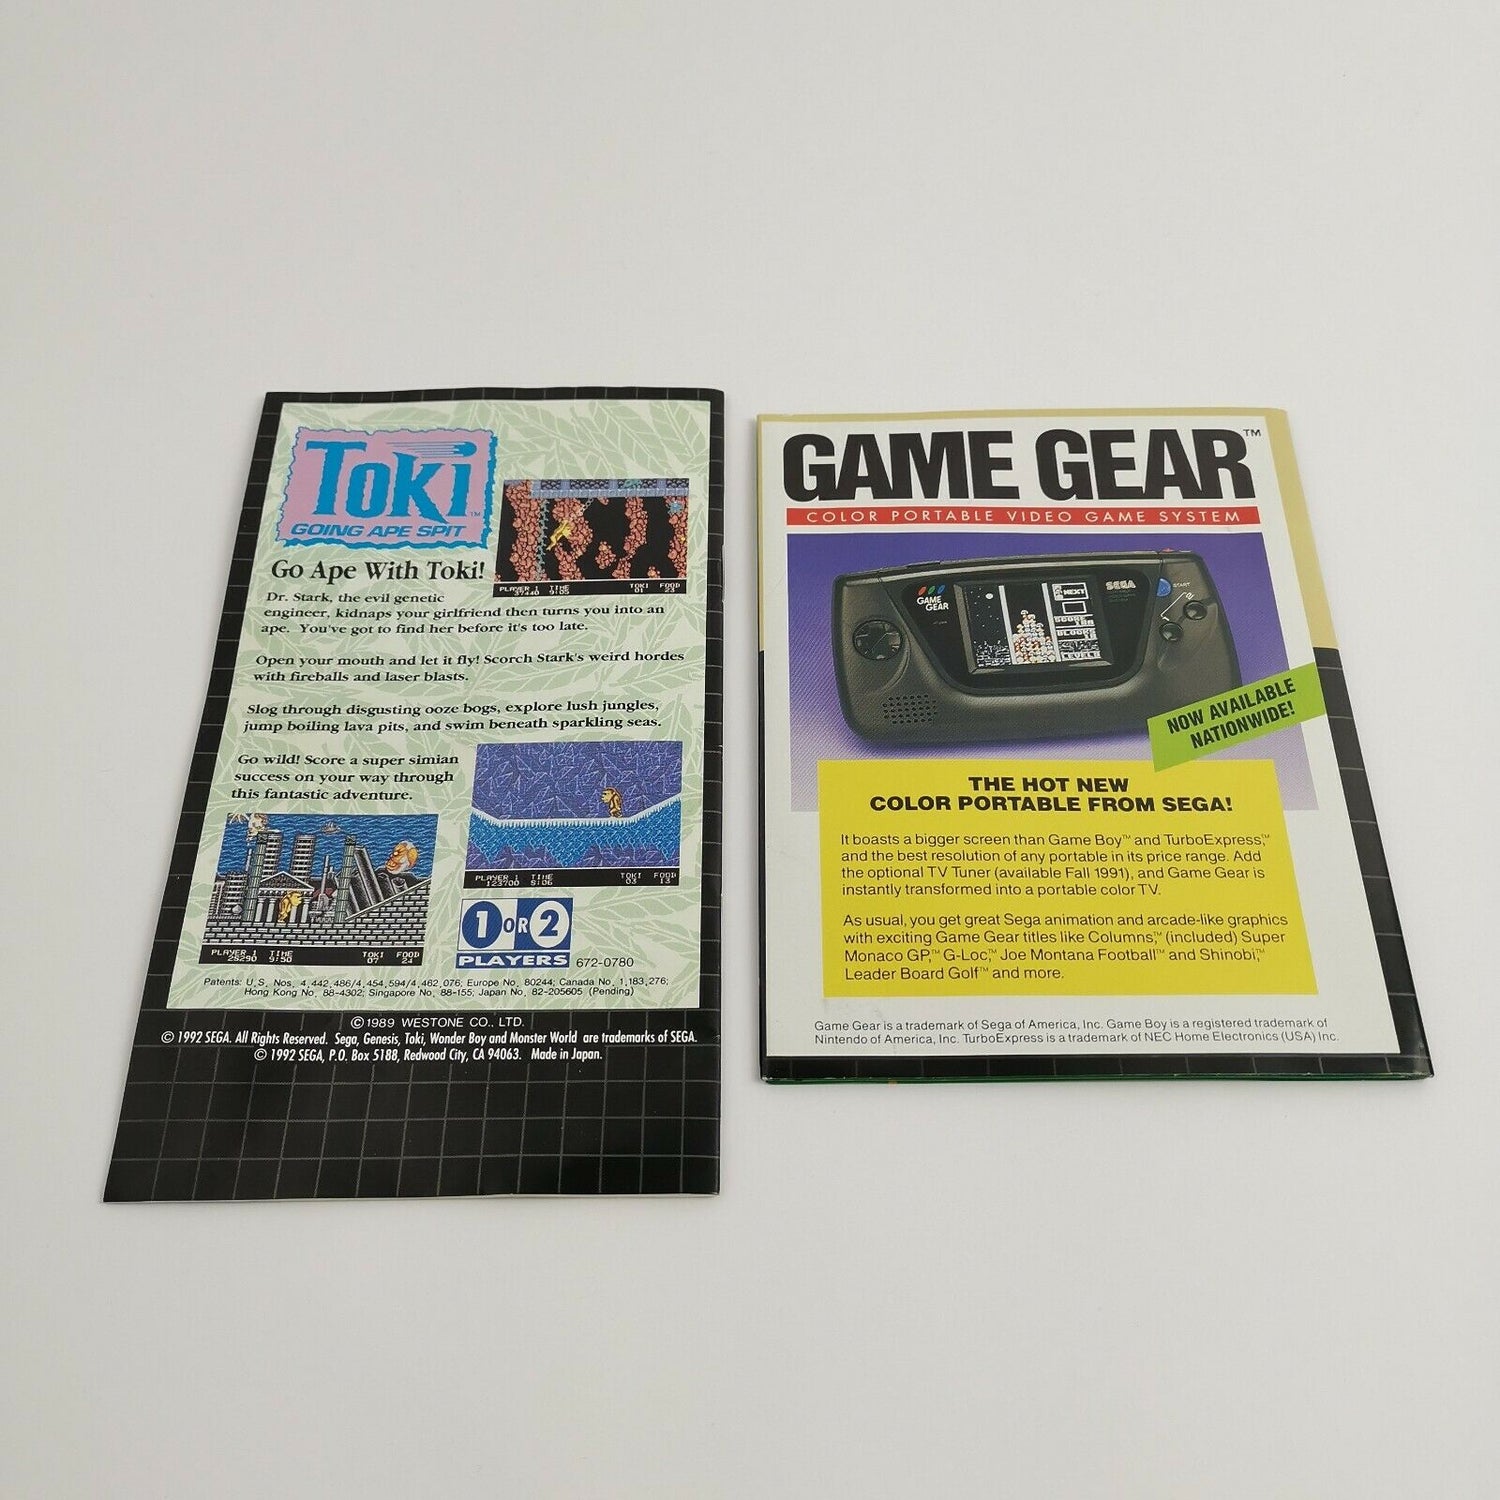 Sega Genesis game 